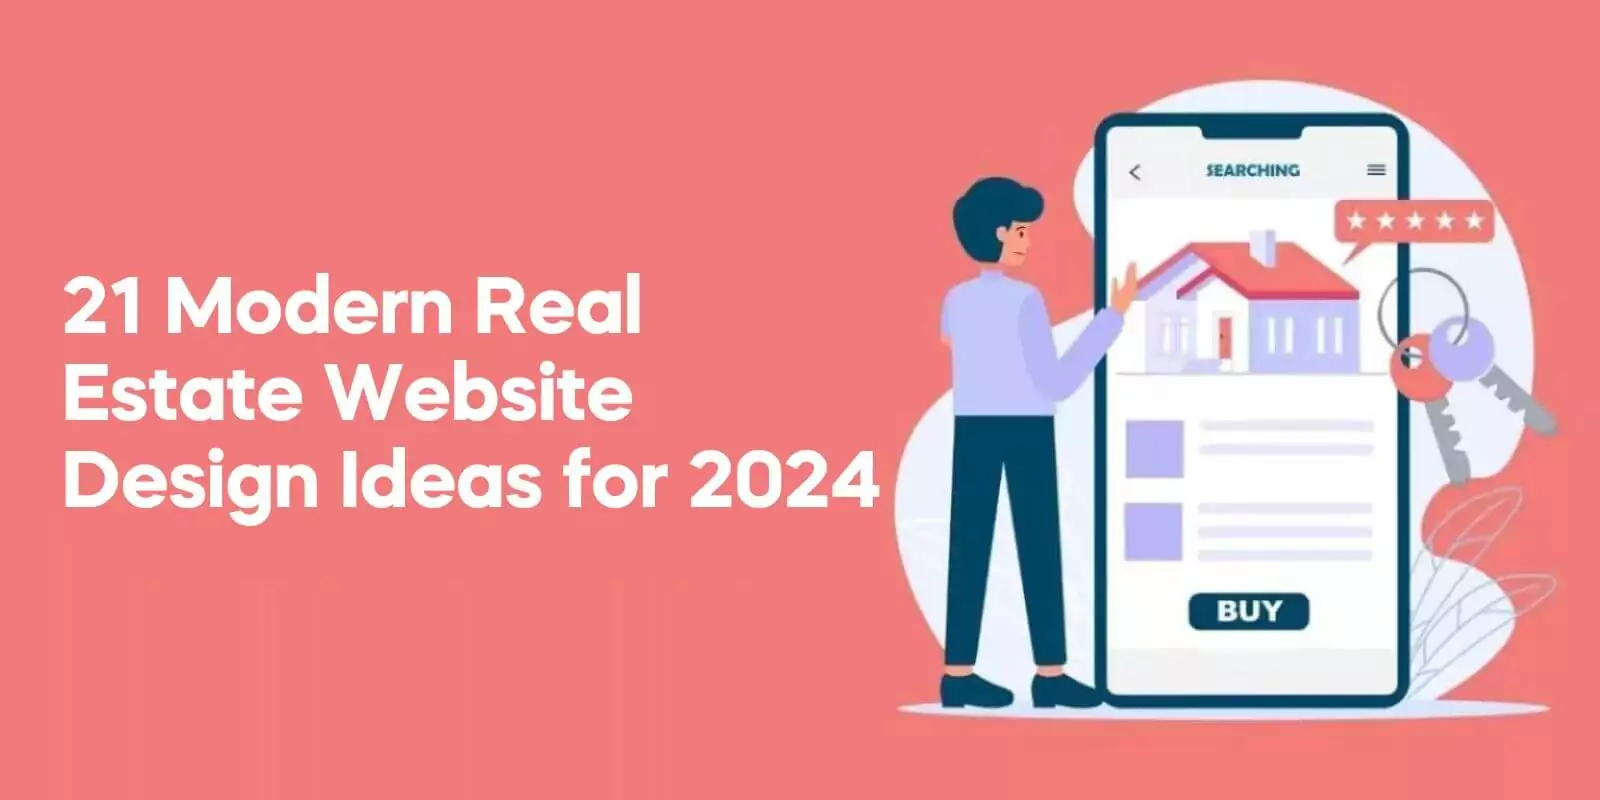 21 Modern Real Estate Website Design Ideas for 2024